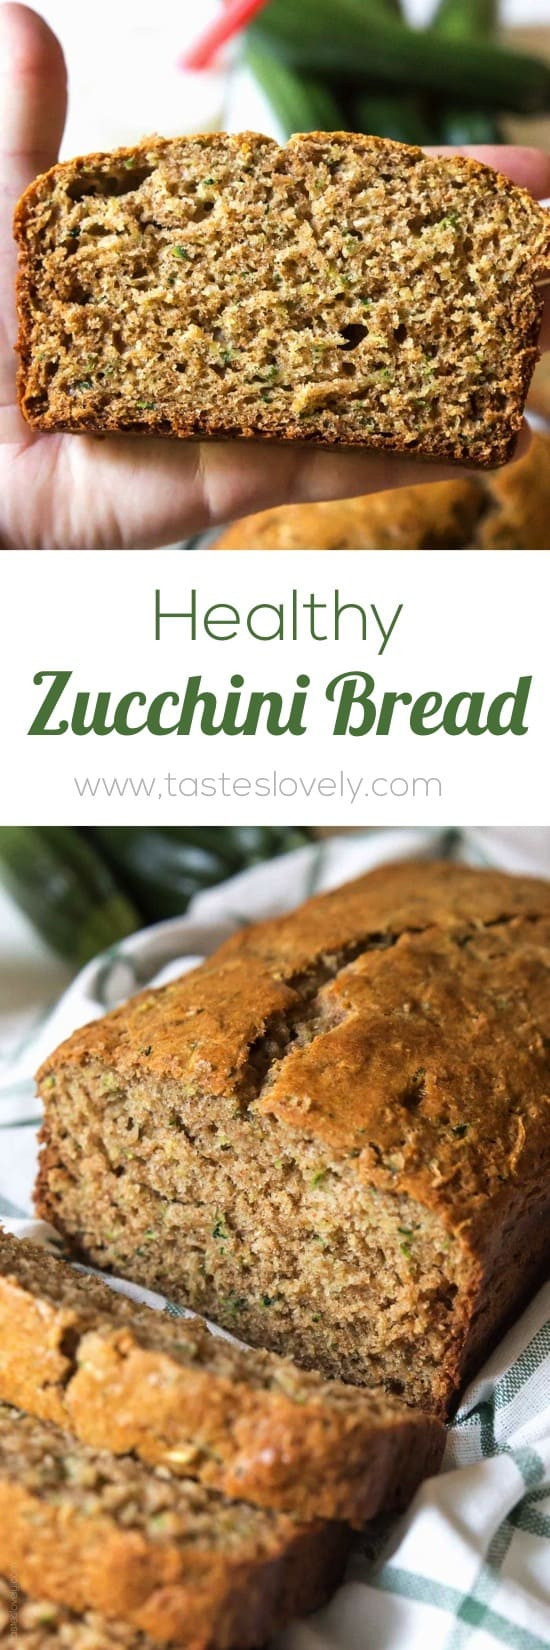 Zucchini Bread Healthy
 Healthy Zucchini Bread — Tastes Lovely